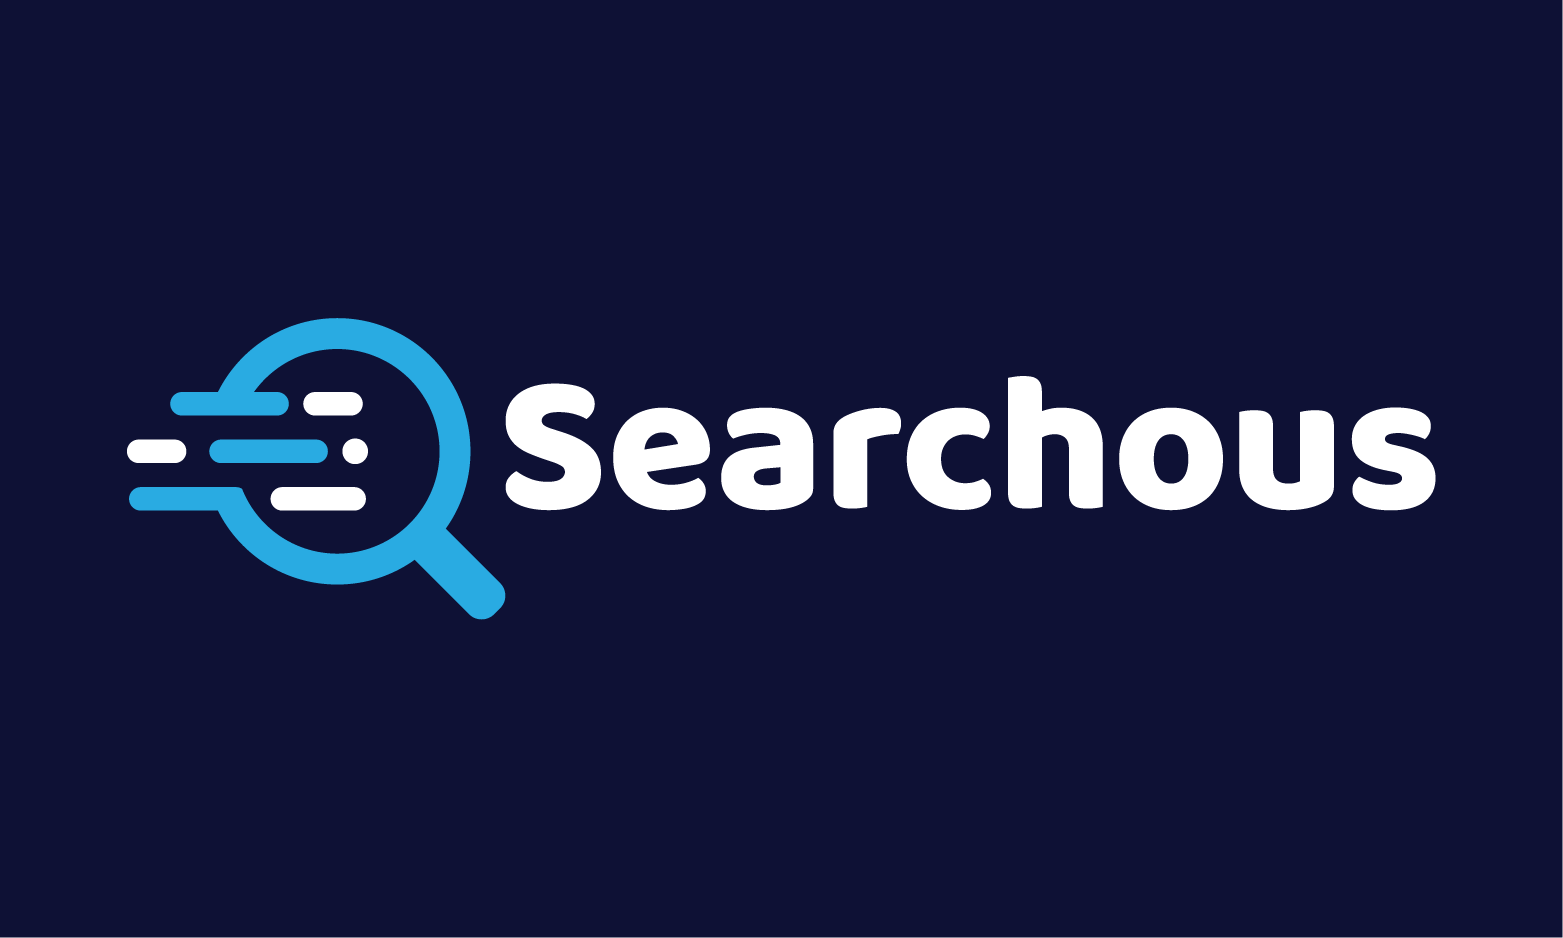 Searchous.com - Creative brandable domain for sale